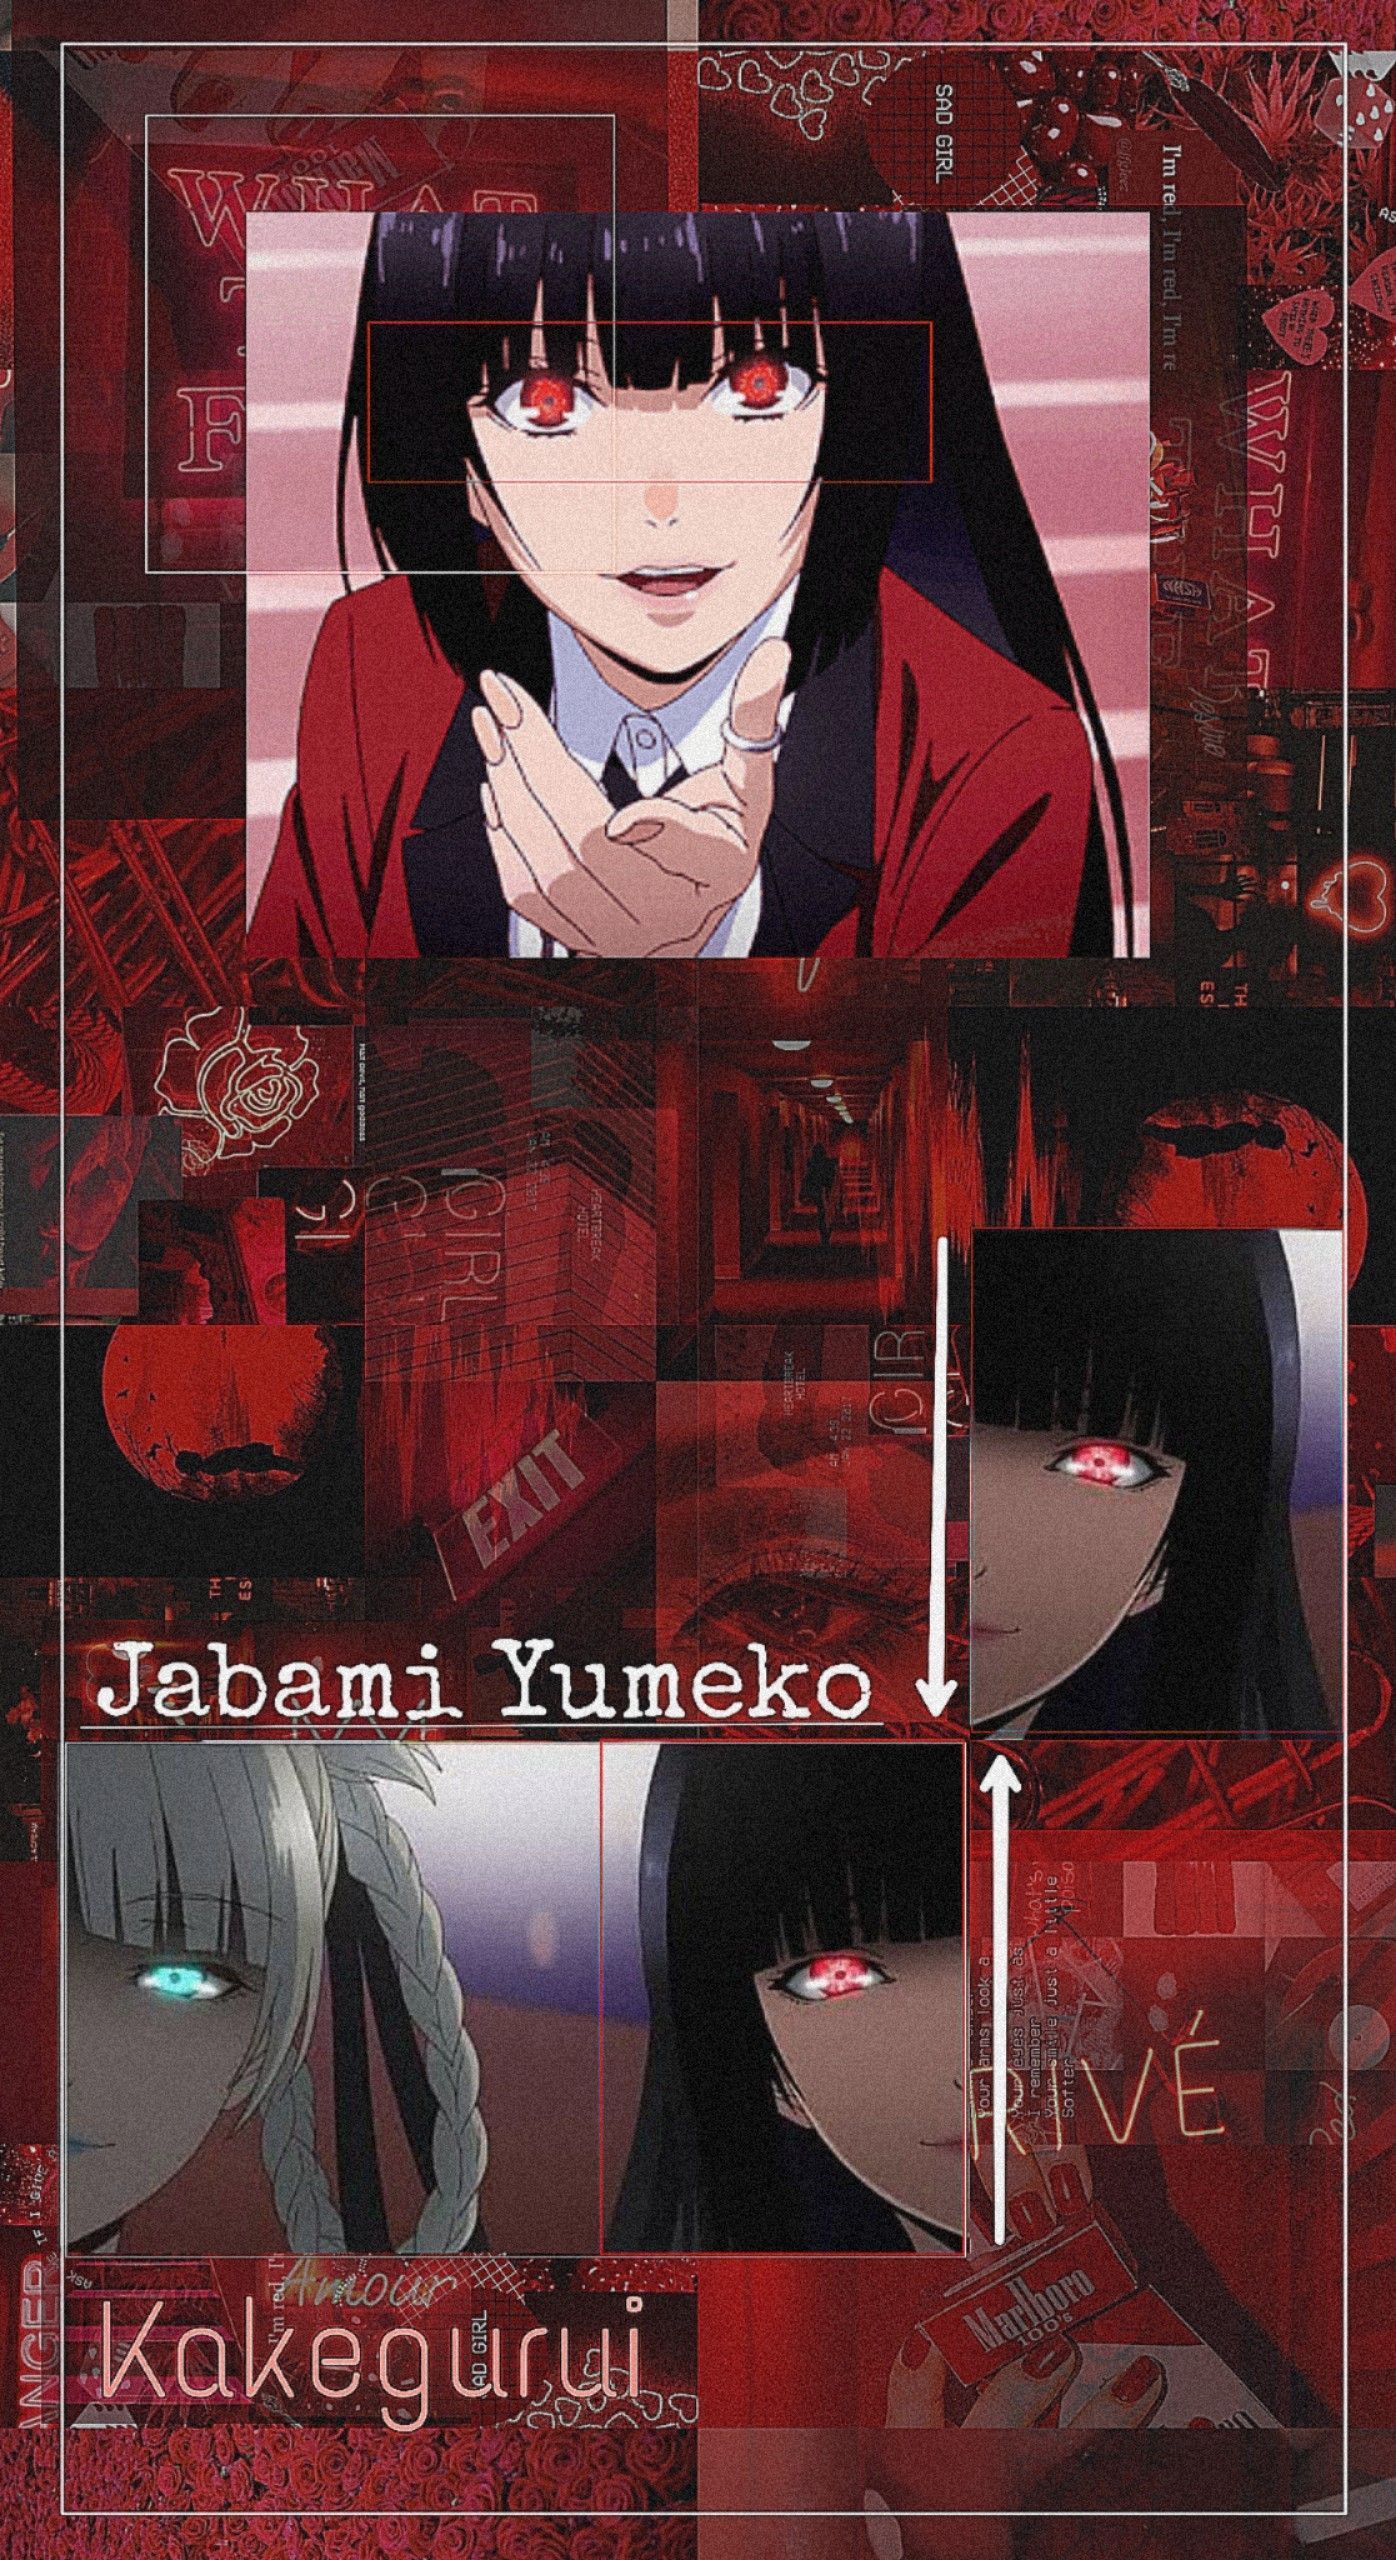 Aesthetic Anime Wallpaper Yumeko Jabami Wallpaper